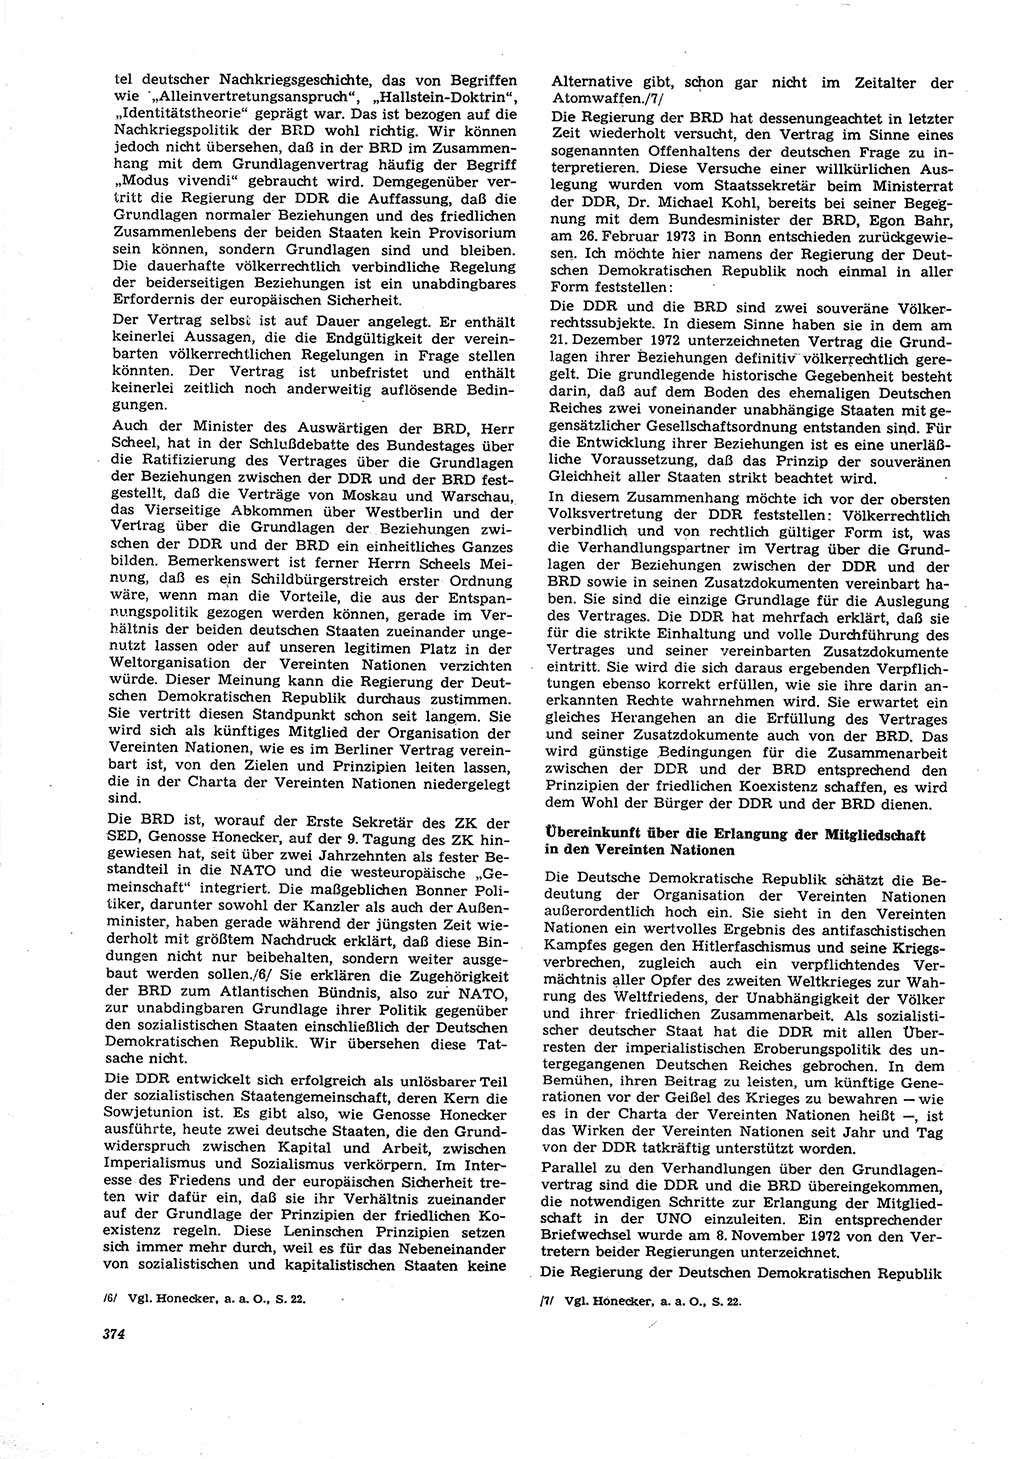 Neue Justiz (NJ), Zeitschrift für Recht und Rechtswissenschaft [Deutsche Demokratische Republik (DDR)], 27. Jahrgang 1973, Seite 374 (NJ DDR 1973, S. 374)